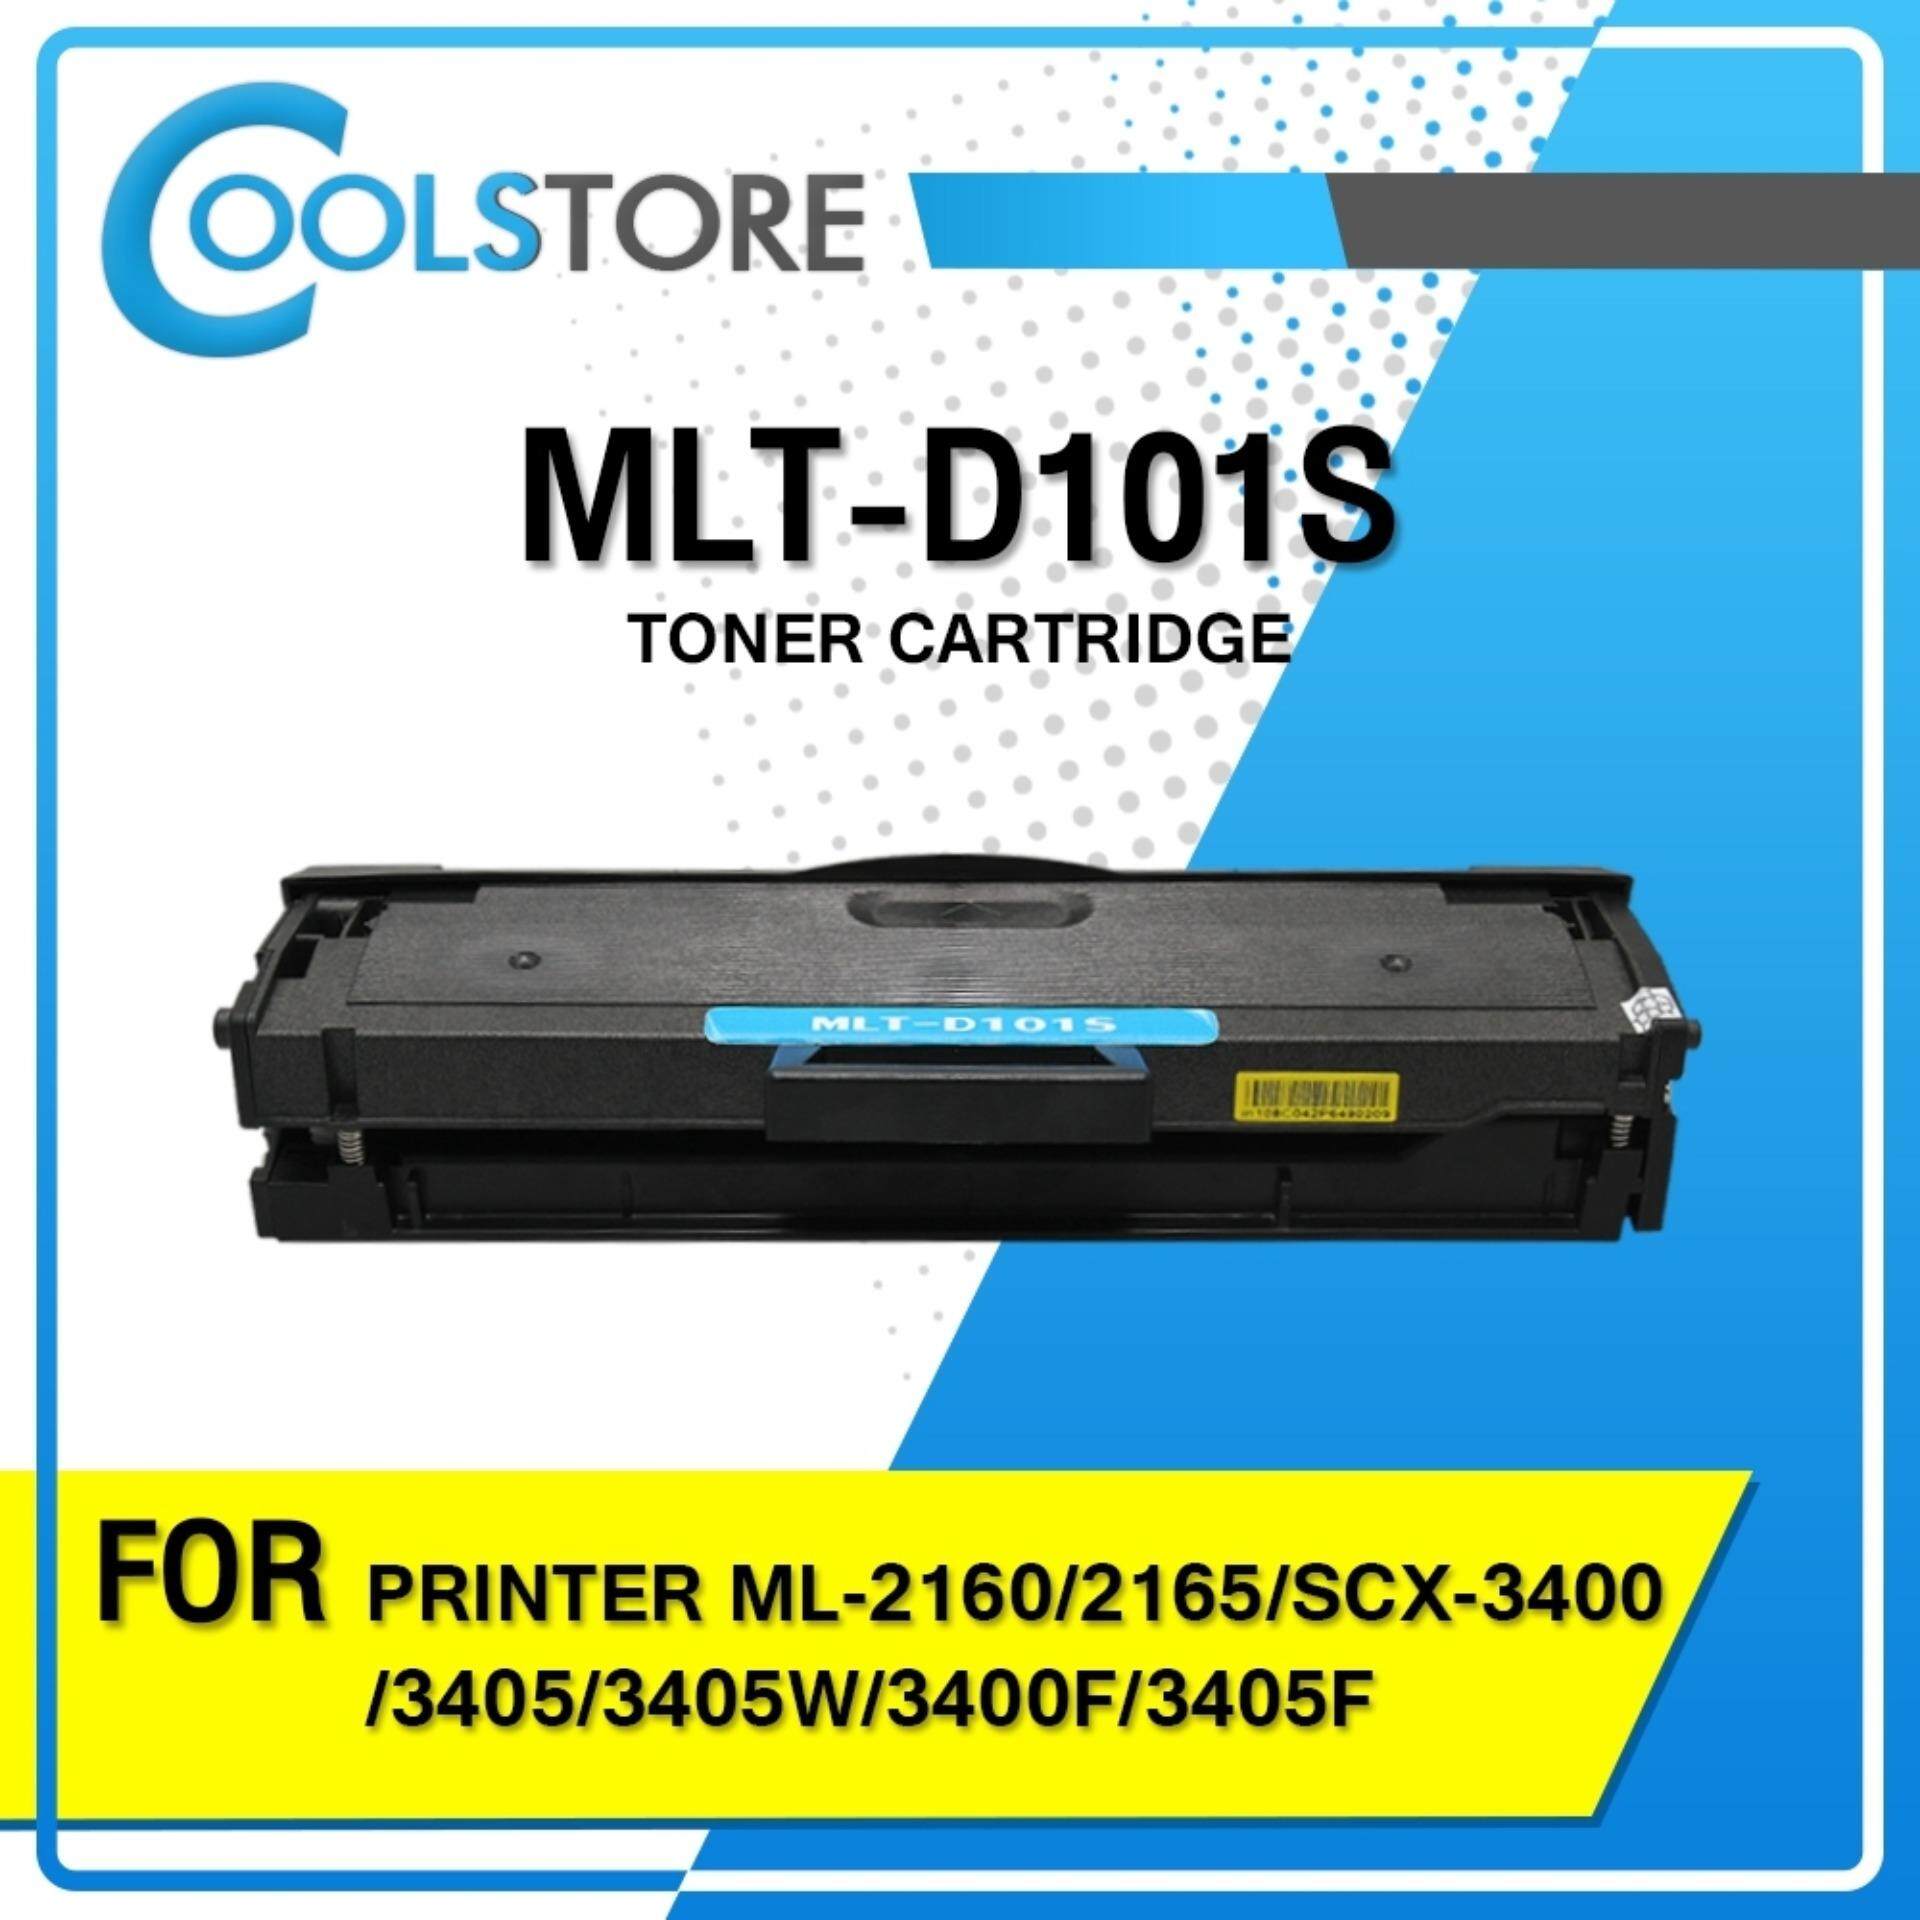 D101S / 101 / D101 / 101S /MLT-D101S / MLT D101S For SAMSUNG PRINTER ML-2160/2165/SCX-3400/3405/3405W/3400F/3405F/3405FW, SF-760P/XSS/ML-261X/SCX-340X/SF-760X ตลับหมึกเลเซอร์โทนเนอร์ Toner COOL